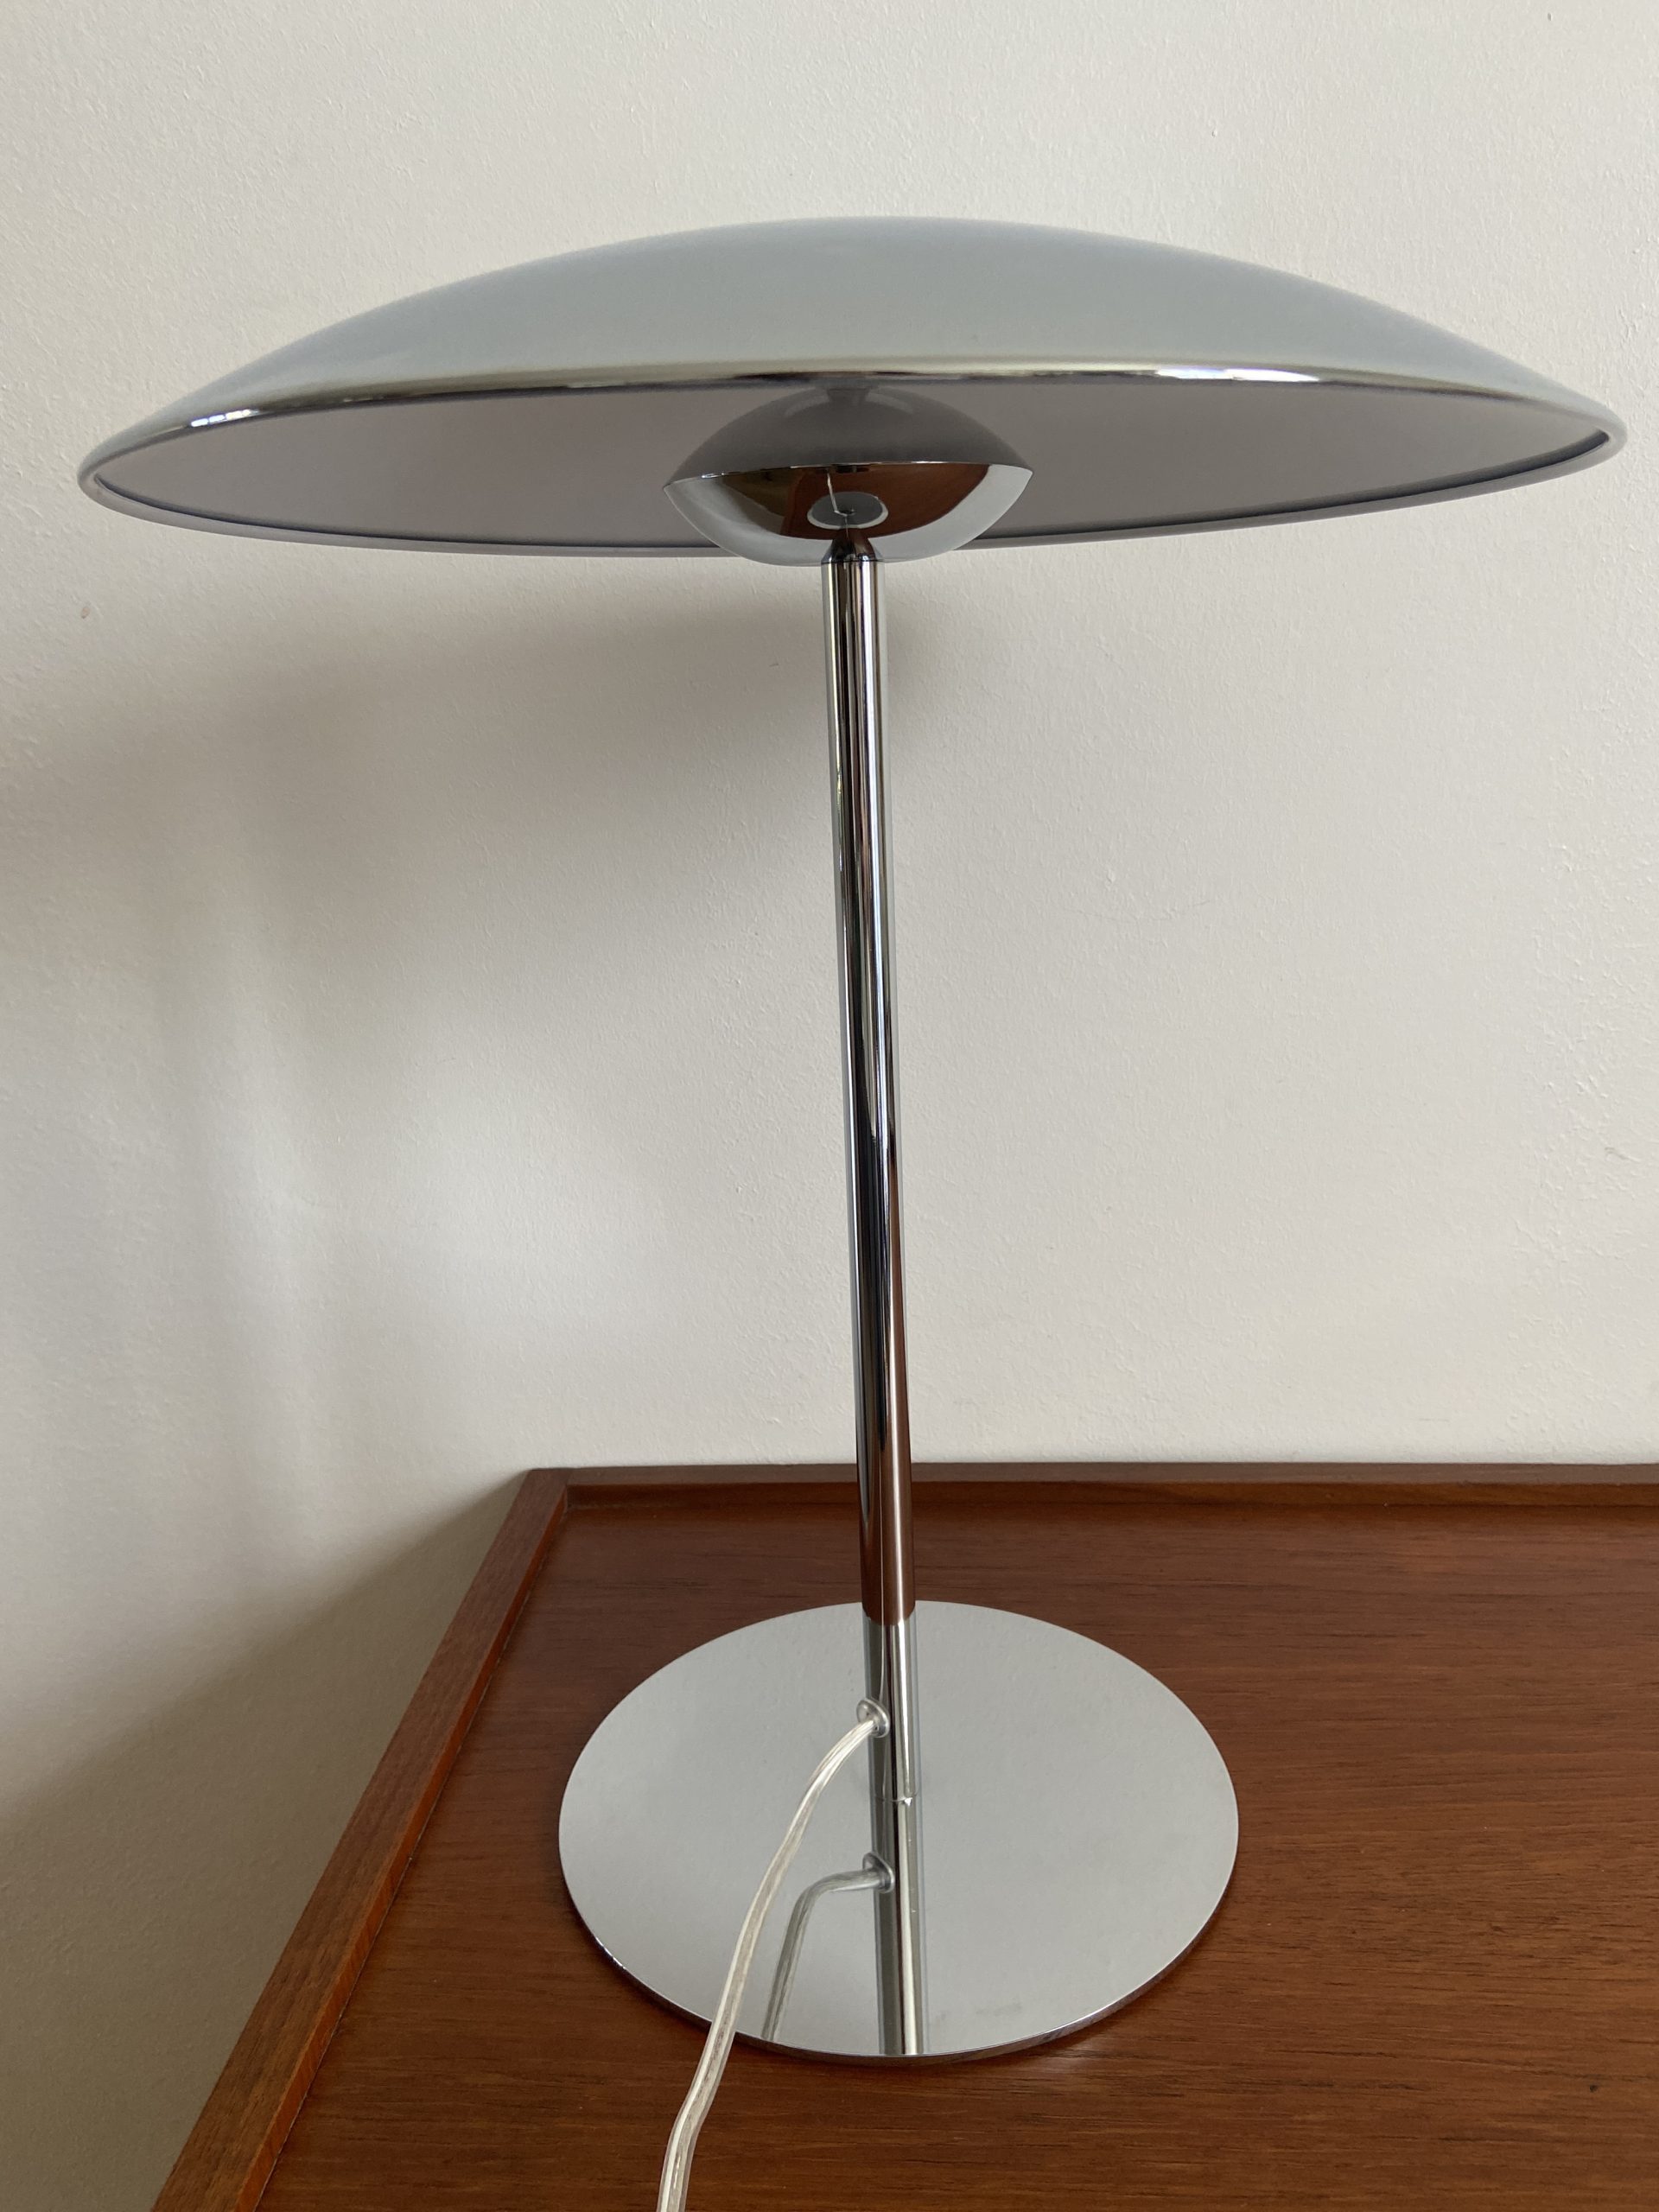 Unilux Timelight - lampe de bureau - LED Pas Cher